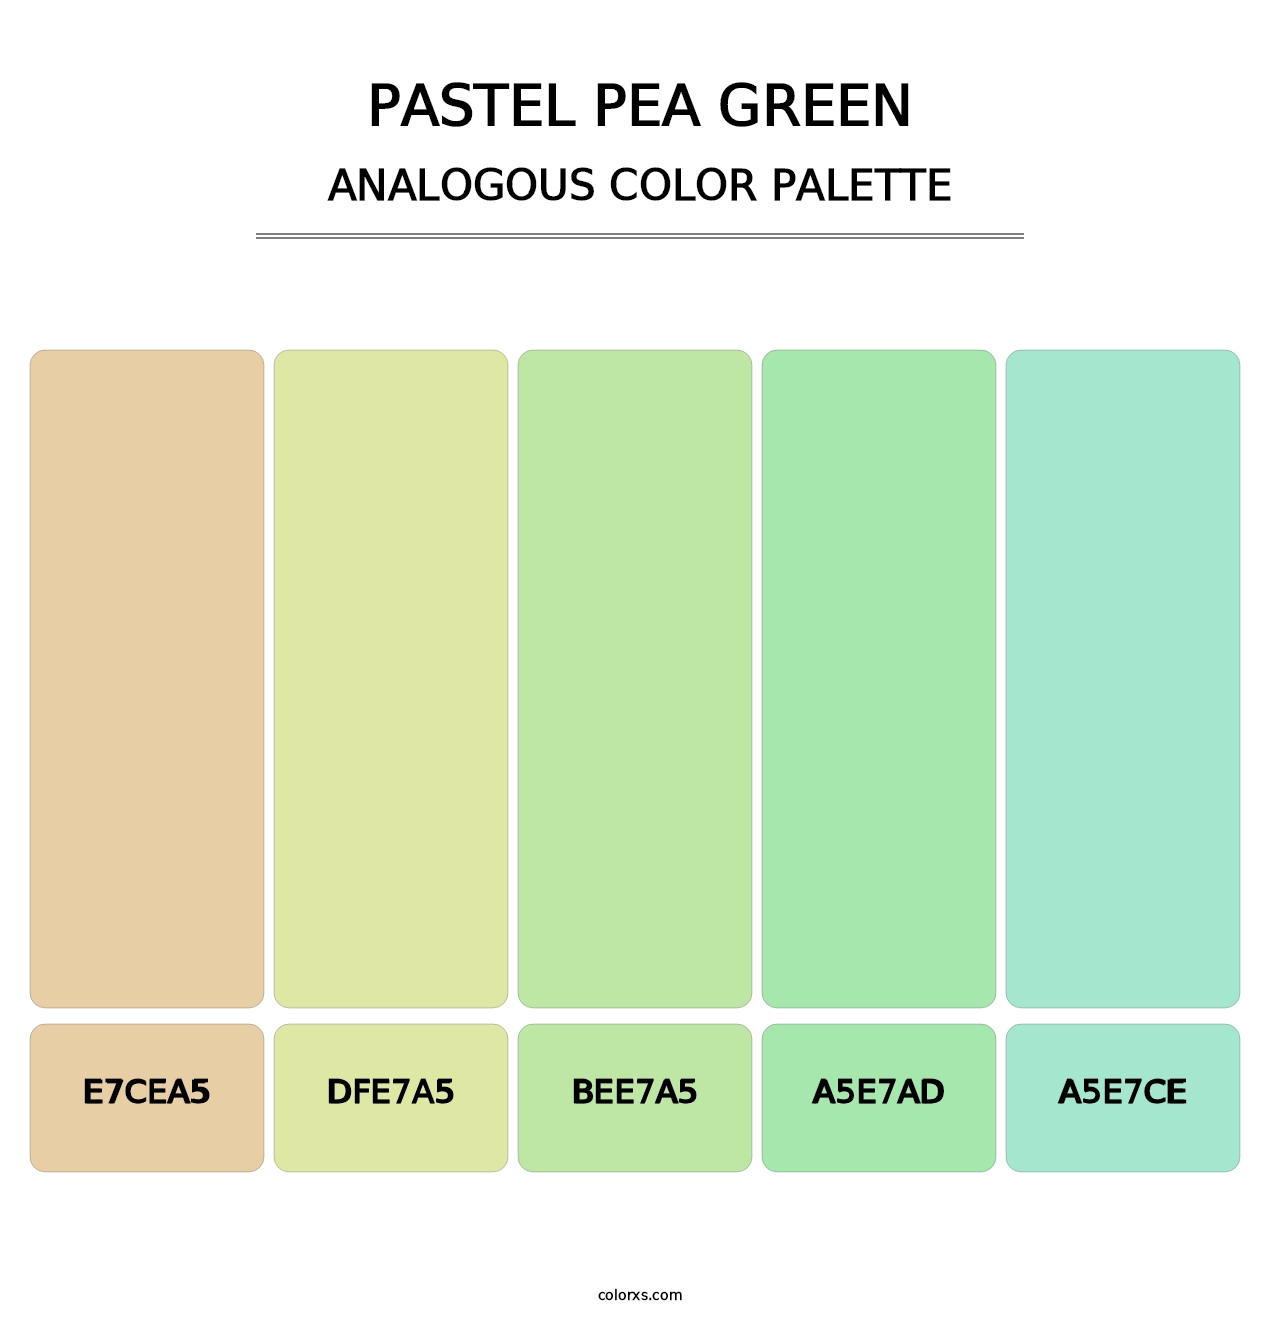 Pastel Pea Green - Analogous Color Palette